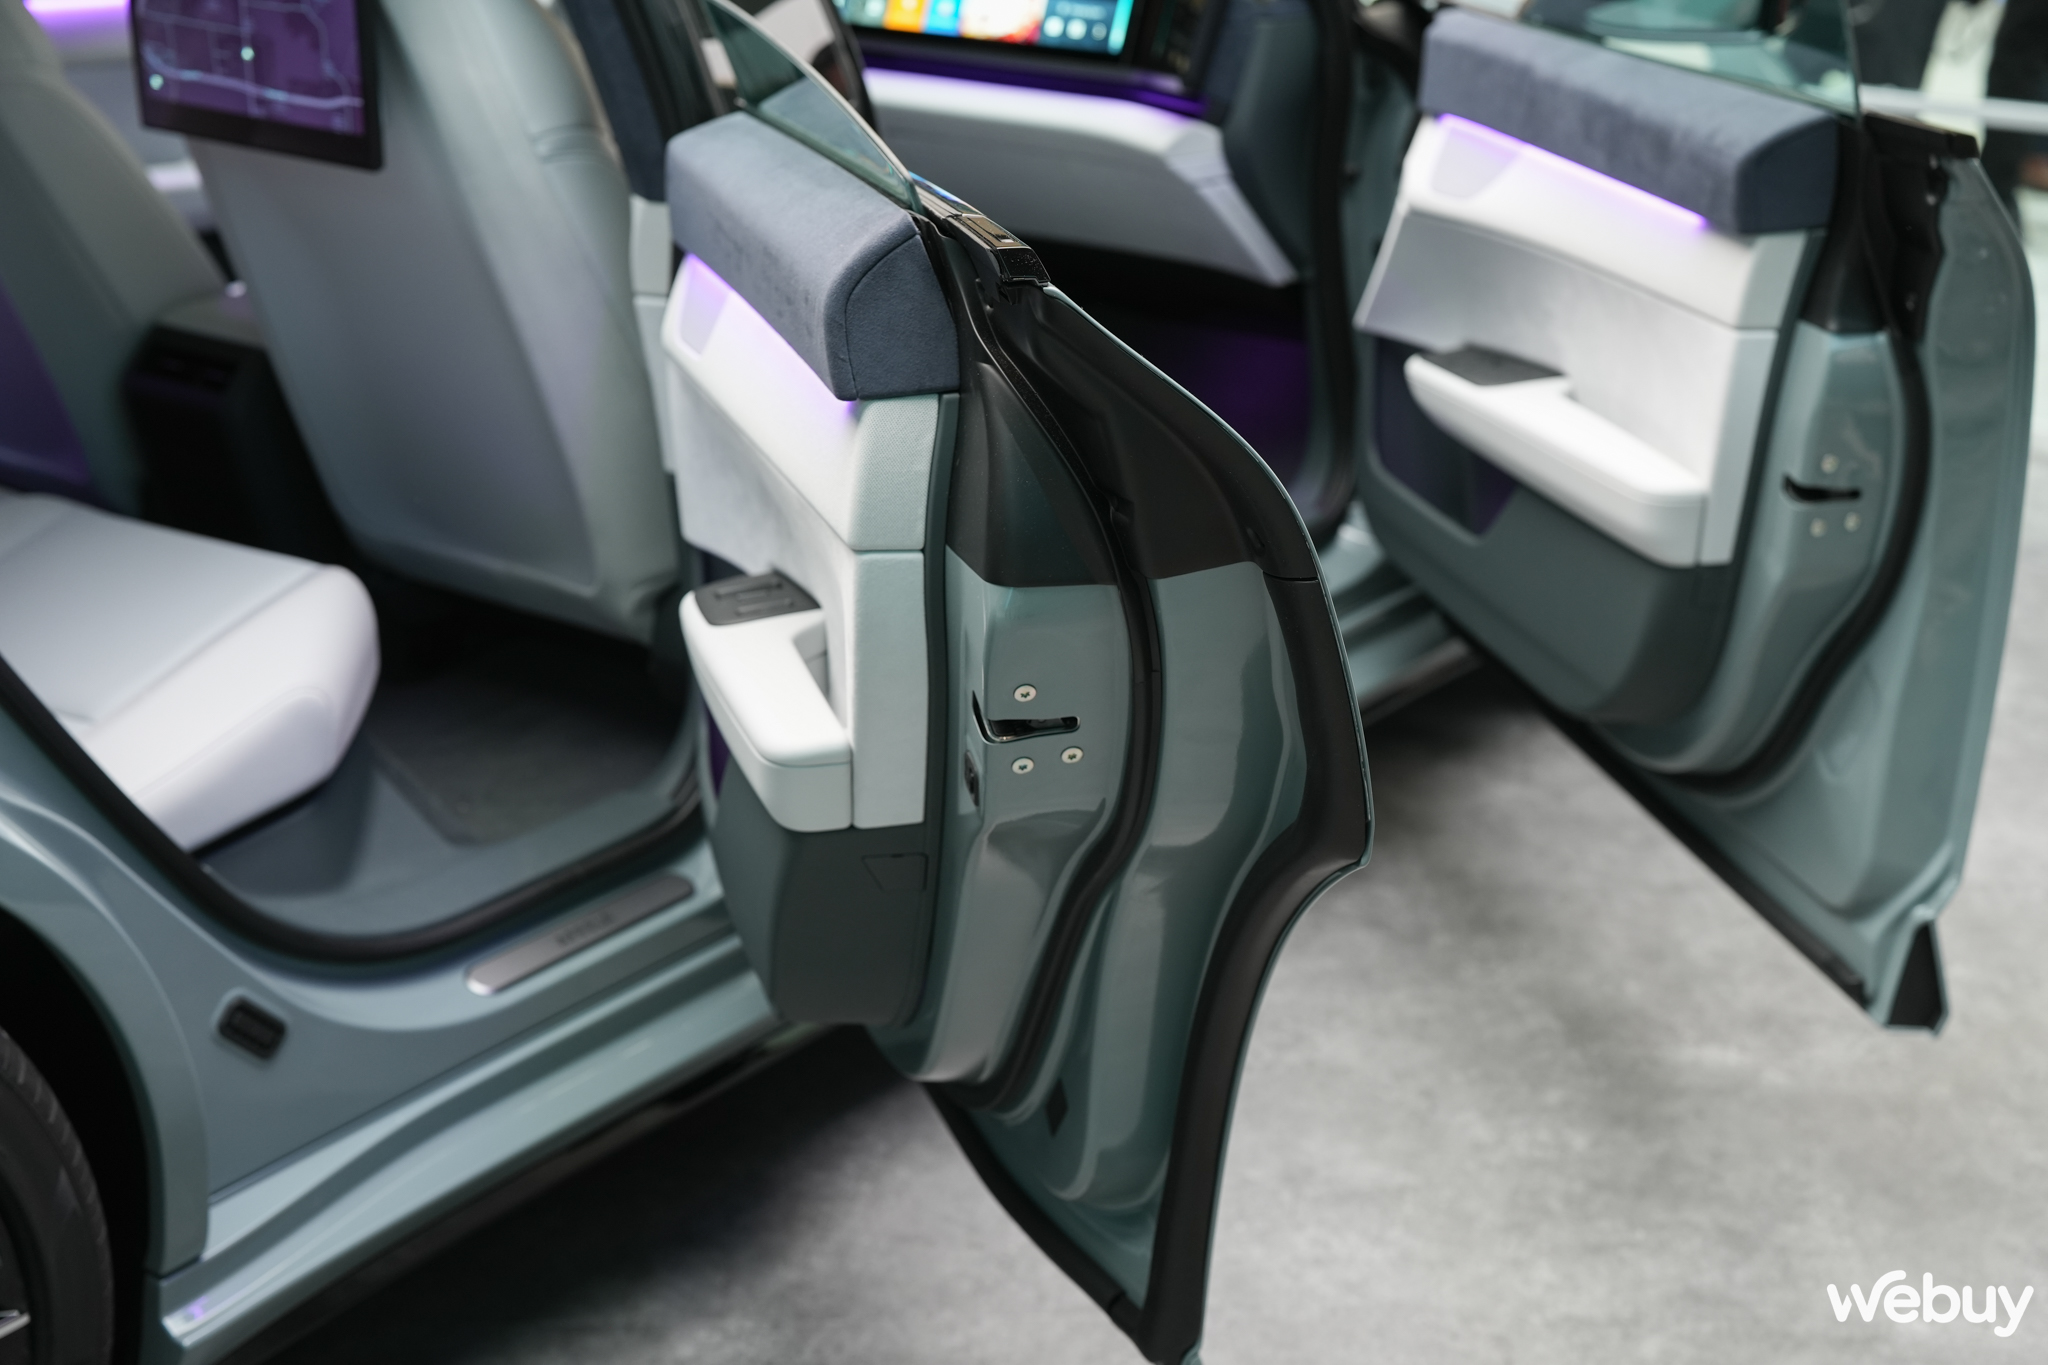 Cận cảnh ô tô điện mới của Sony và Honda: Trang bị AI, có thể điều khiển bằng tay cầm PS5, tích hợp cả Unreal Engine 5- Ảnh 11.